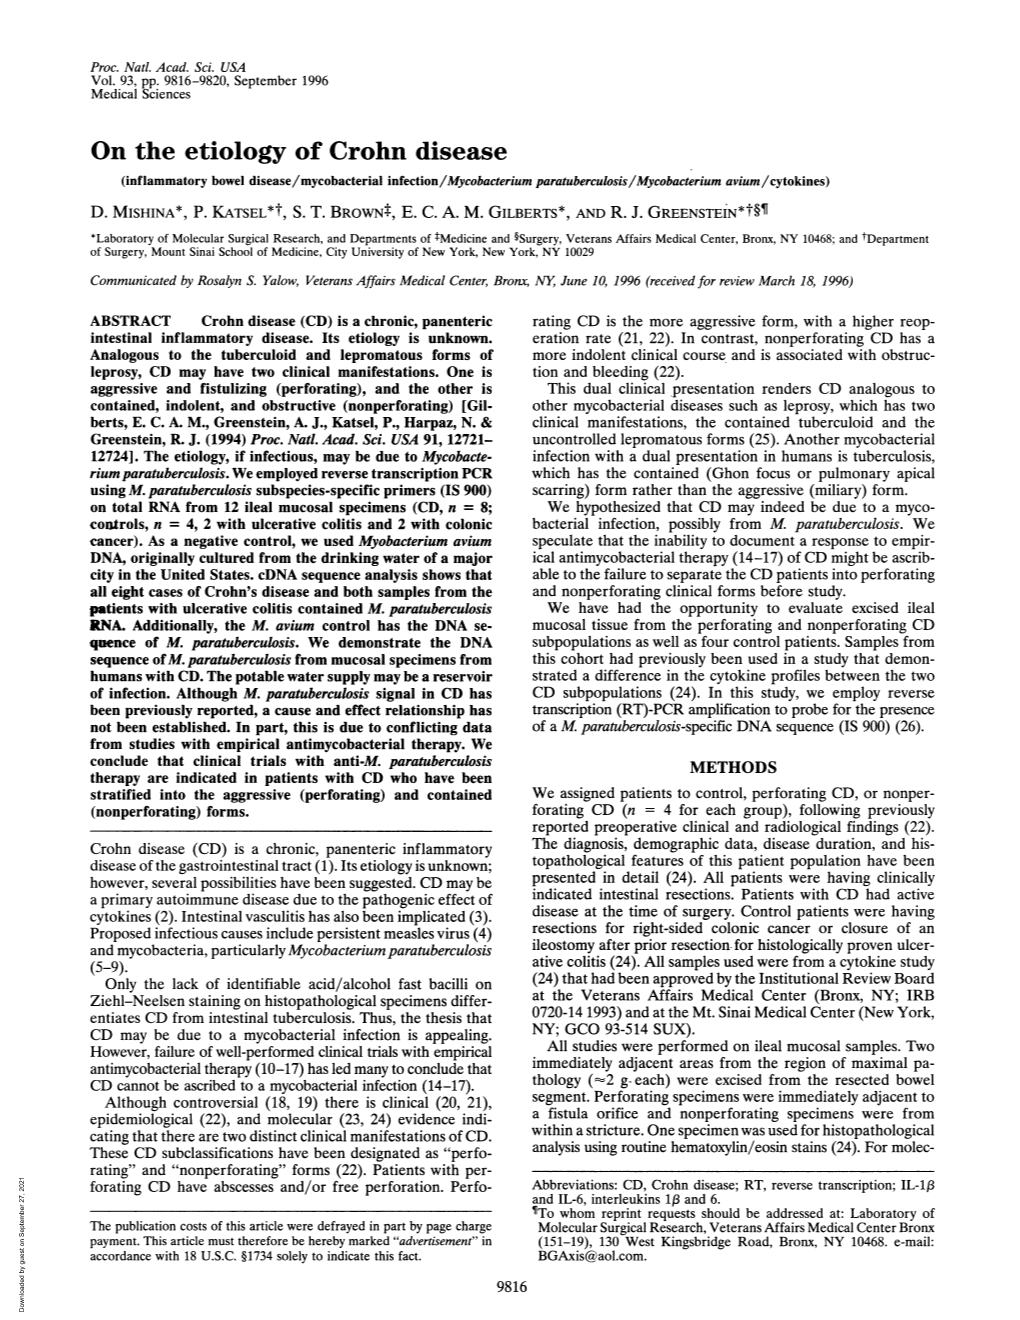 On the Etiology of Crohn Disease (Inflammatory Bowel Disease/Mycobacterial Infection/Mycobacterium Paratuberculosis/Mycobacterium Avium/Cytokines) D